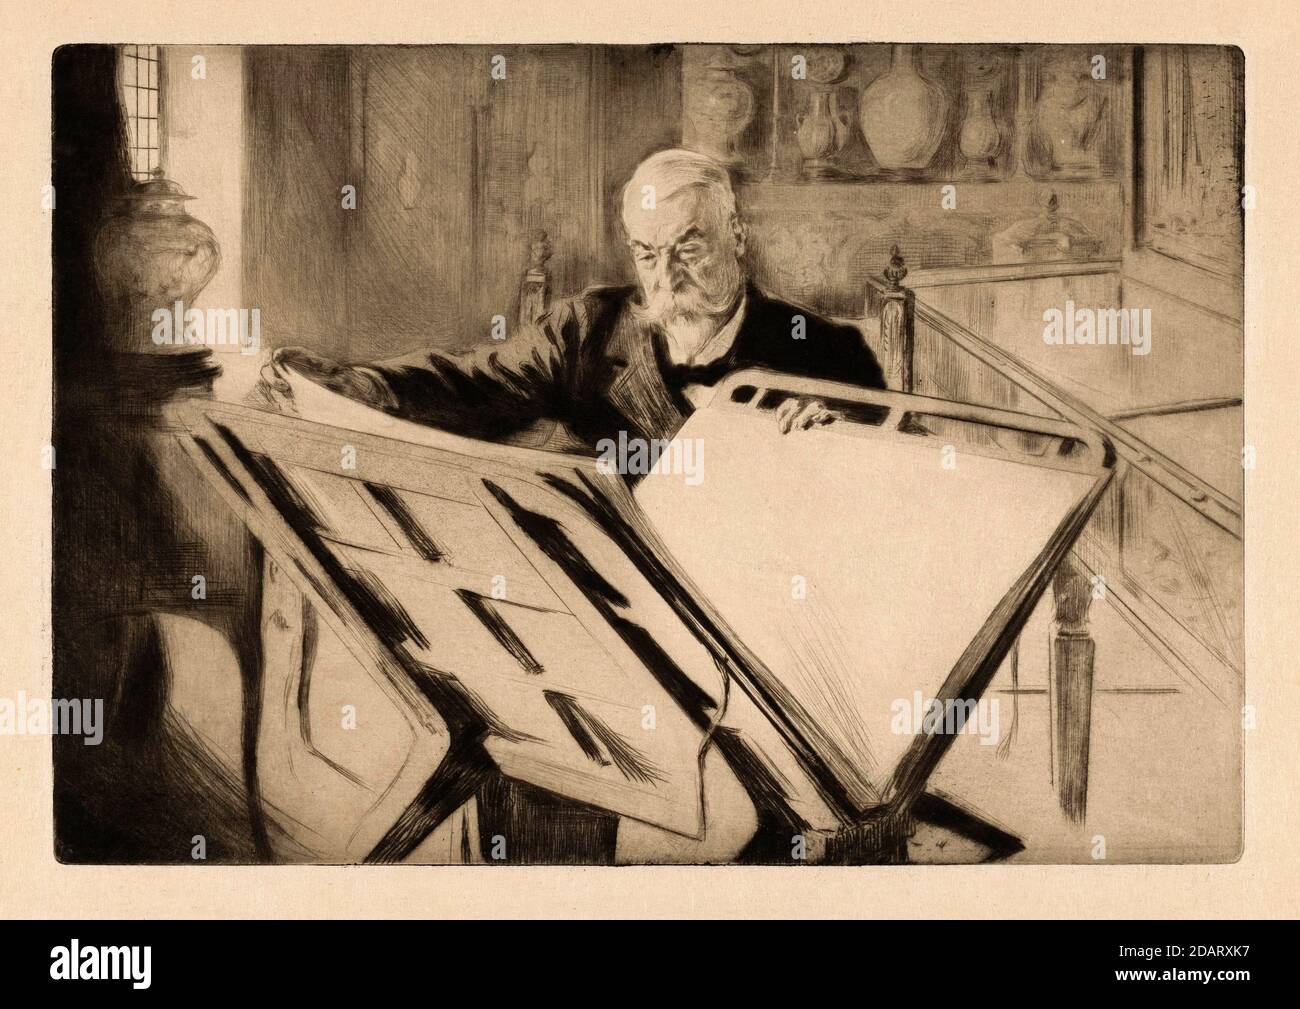 1924 ca, Parigi, FRANCIA: Il pittore e illustratore francese HENRY GERBAULT (Henri, 1863-1930). Era il nipote del celebre poeta Sully Prudhomme . Incisione ritratto di Edgar Chahine ( 1874 - 1947 ). - WORLD - ITALIANO - ARTE - ARTI VISIVE - ARTI VISIVE - PITTURA - ritratti - STORIA - FOTO STORICHE - BELLE EPOQUE - baffi - baffi - incisione - illustrazione - illustrazione - ILLUSTRATORE --- Archivio GBB Foto Stock